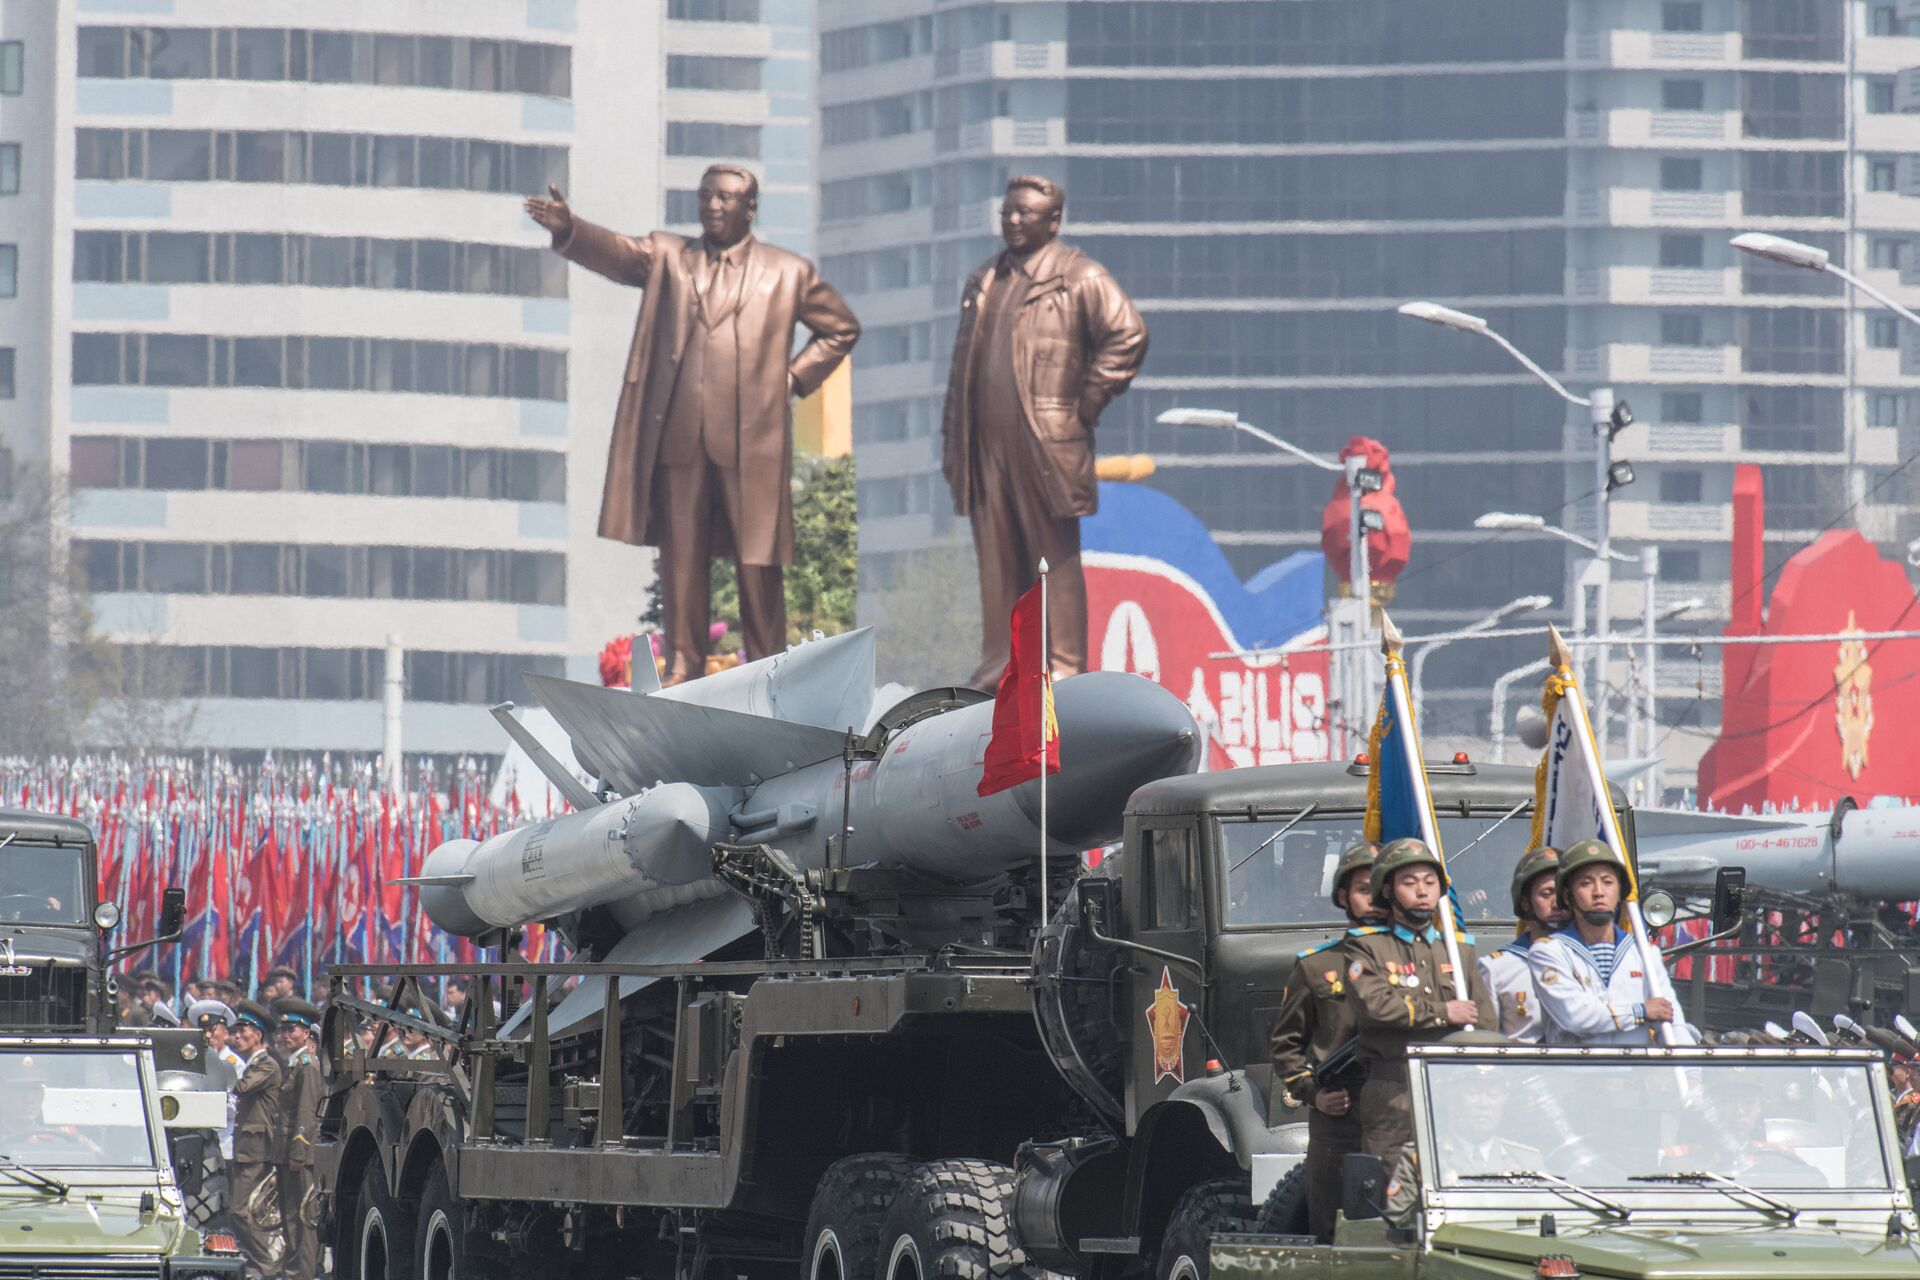 'Ameaças graves': Coreia do Norte critica menções a Pyongyang em relatório de Defesa do Japão - Sputnik Brasil, 1920, 16.07.2021